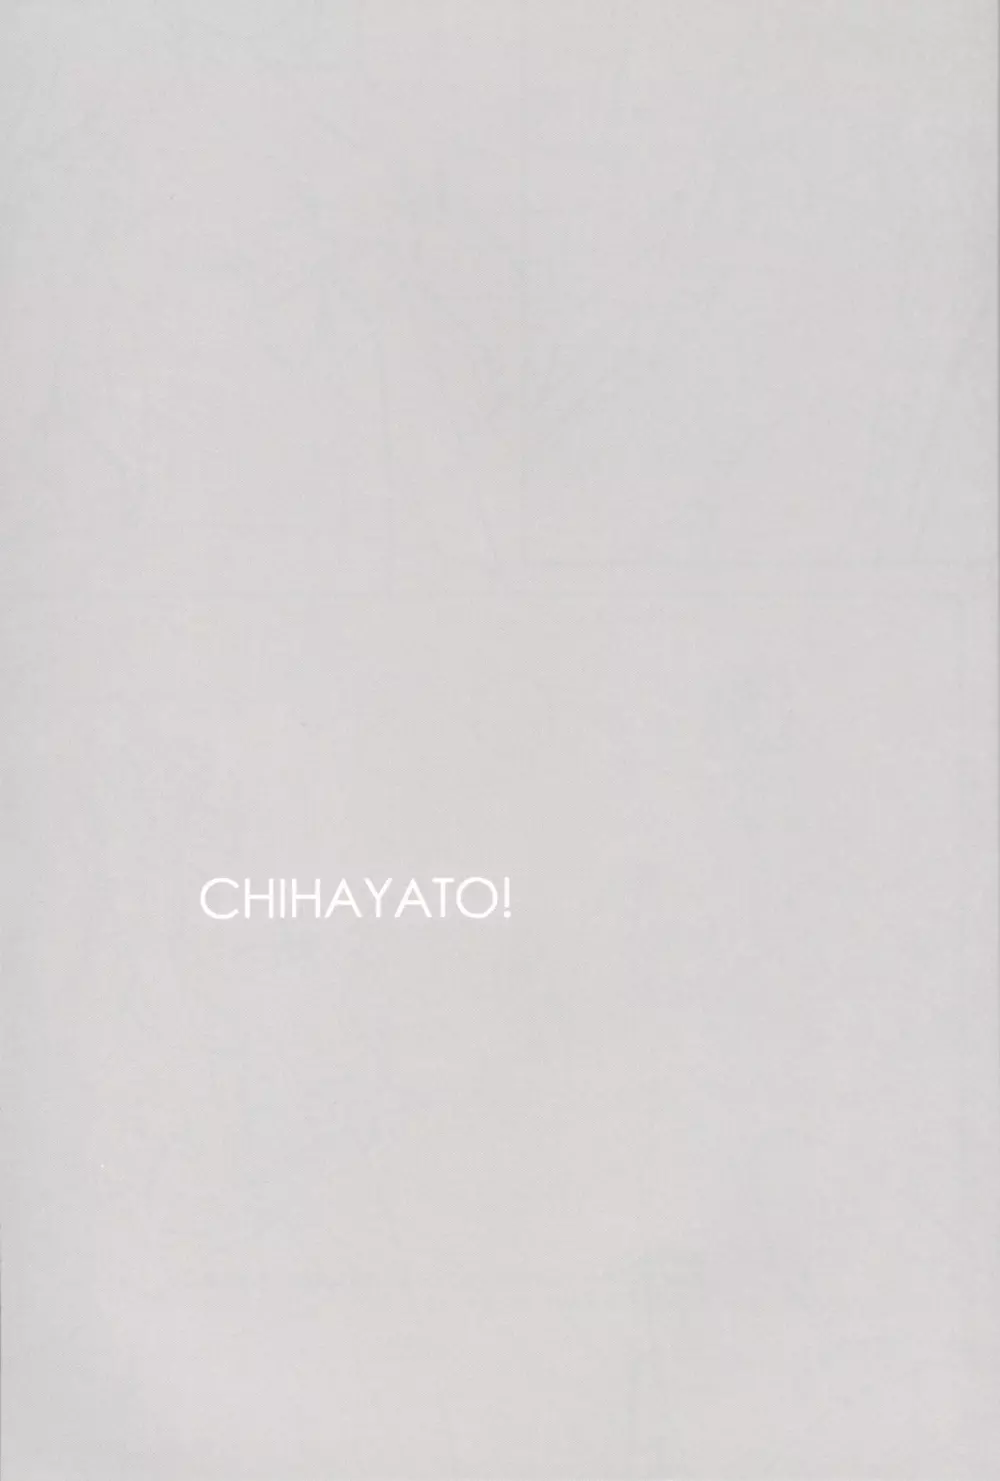 CHIHAYATO! - page2